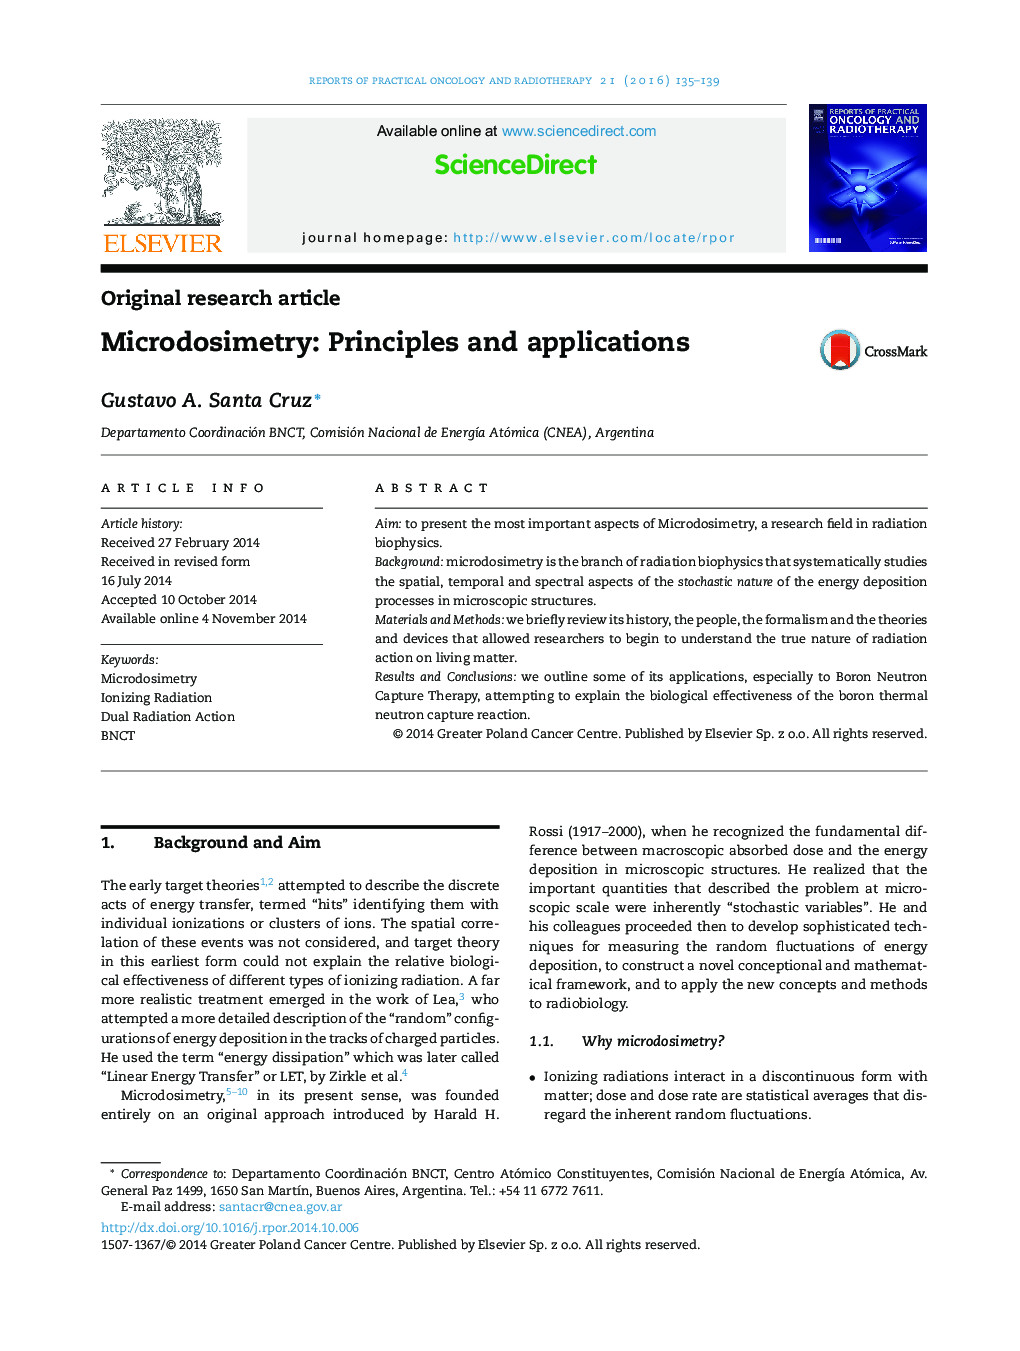 میکرودسیمتری(فن سنجش توزیع میکرومتری انرژی) : قواعد و کارایی